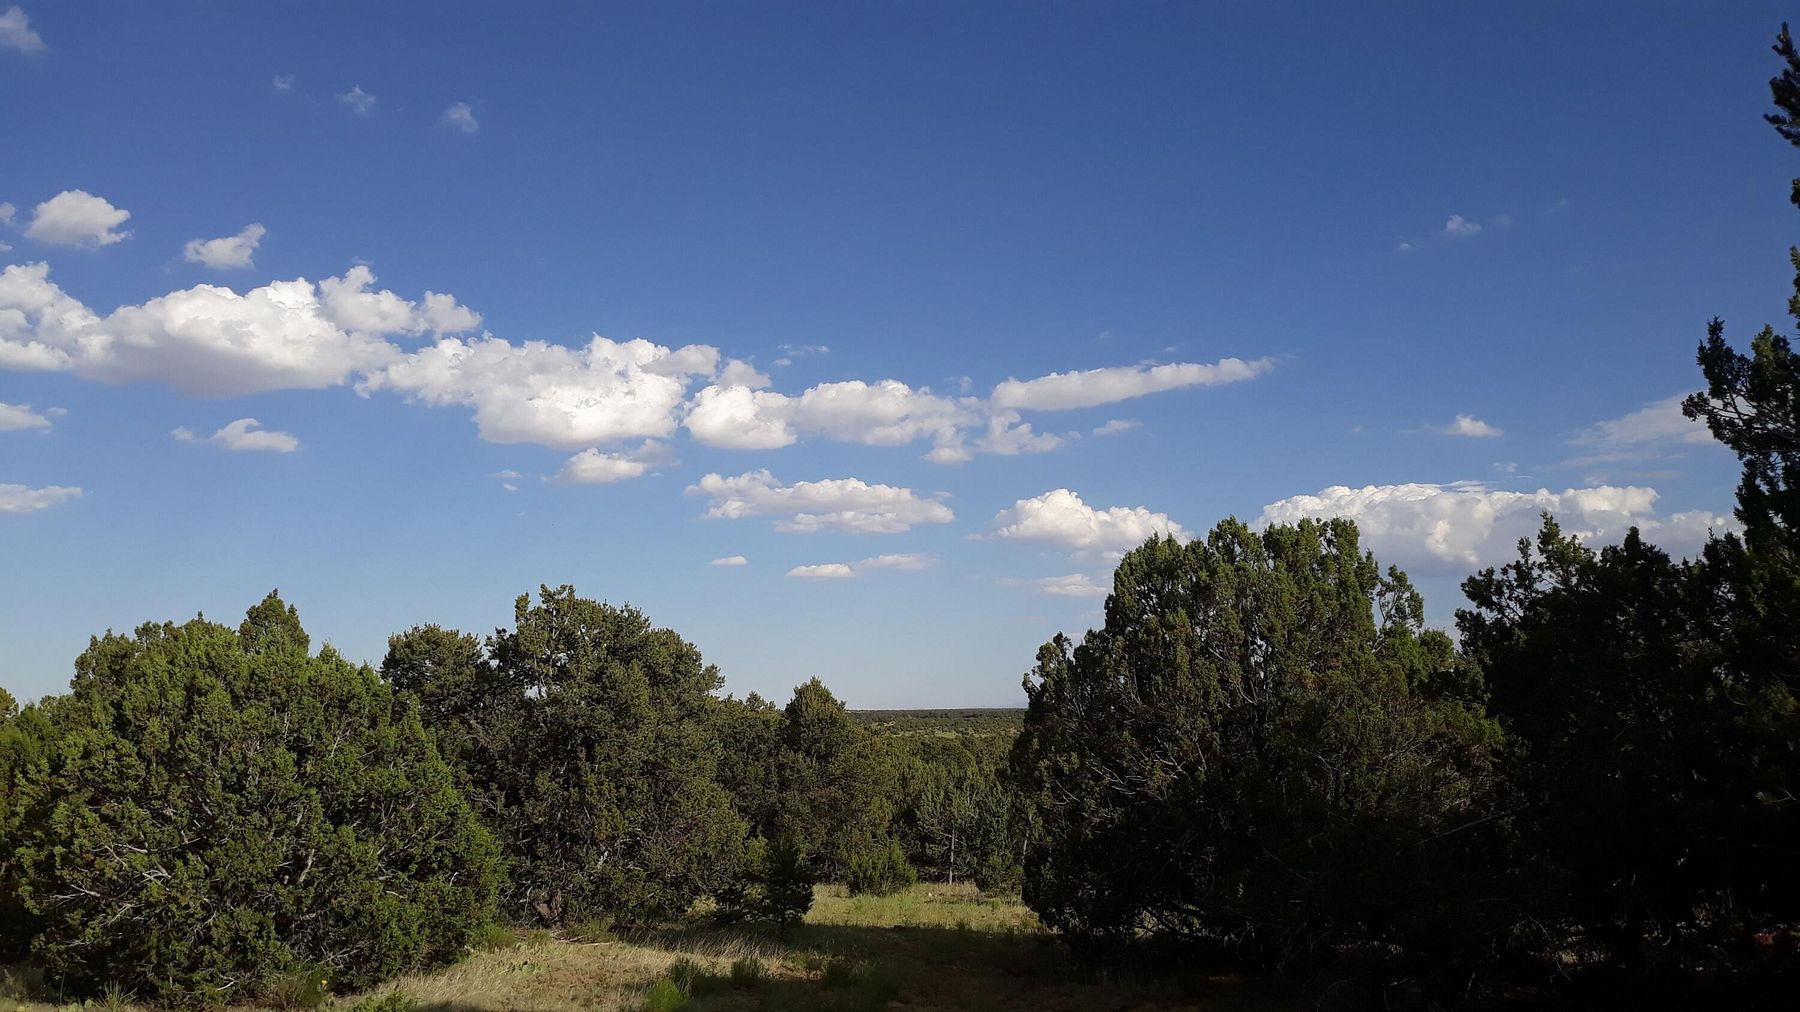 34 Acres of Land Tijeras, New Mexico, NM